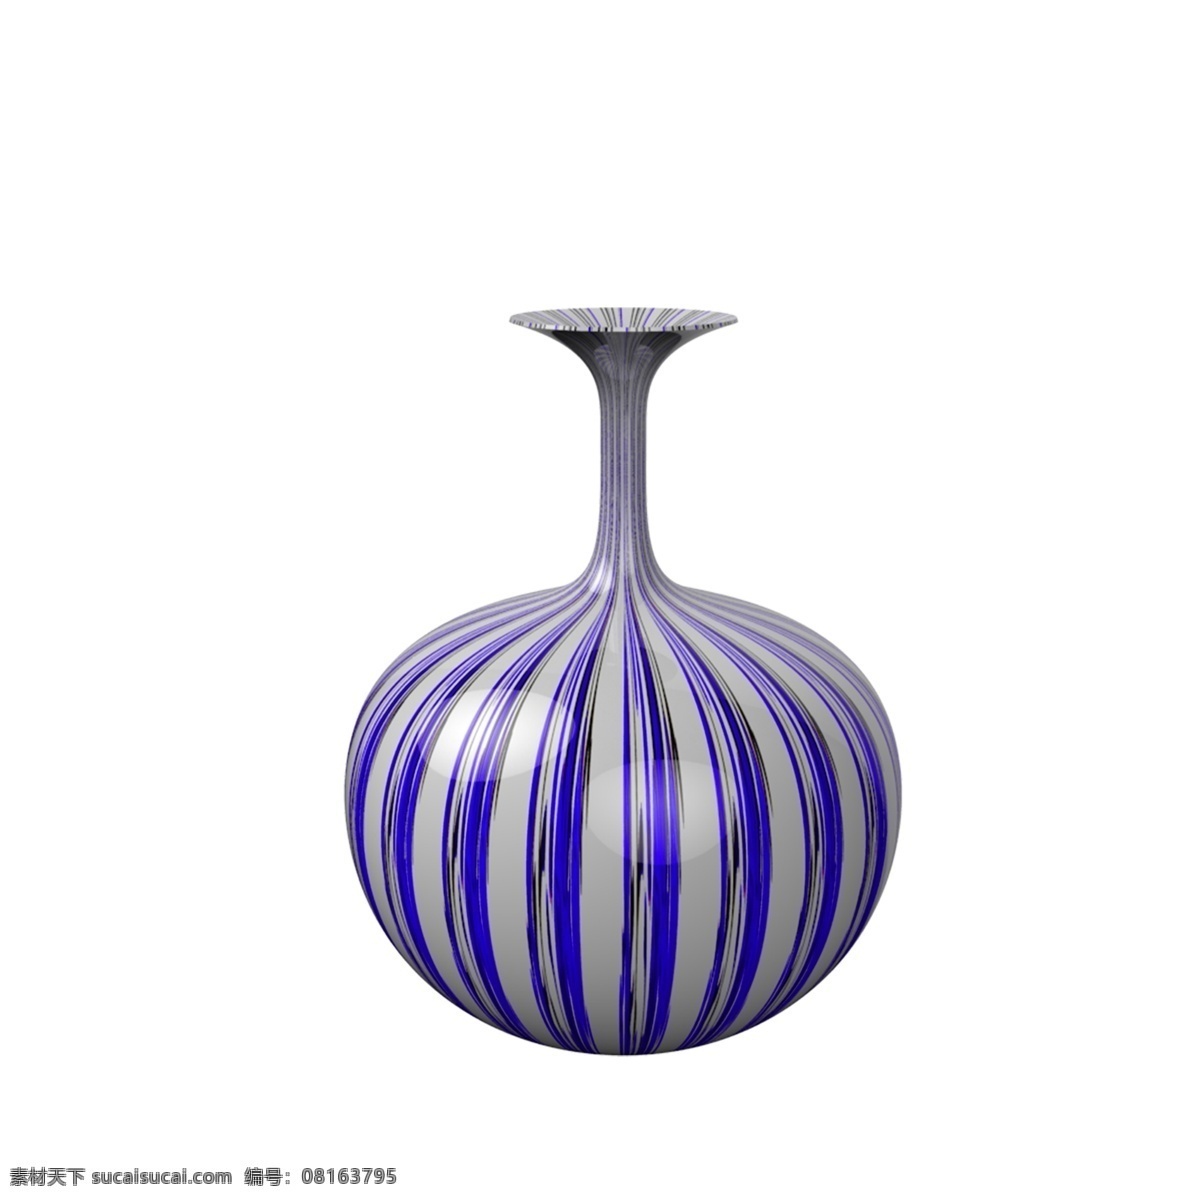 仿真 陶瓷 花瓶 免 抠 蓝白条纹 陶瓷花瓶 家居装饰 家装节